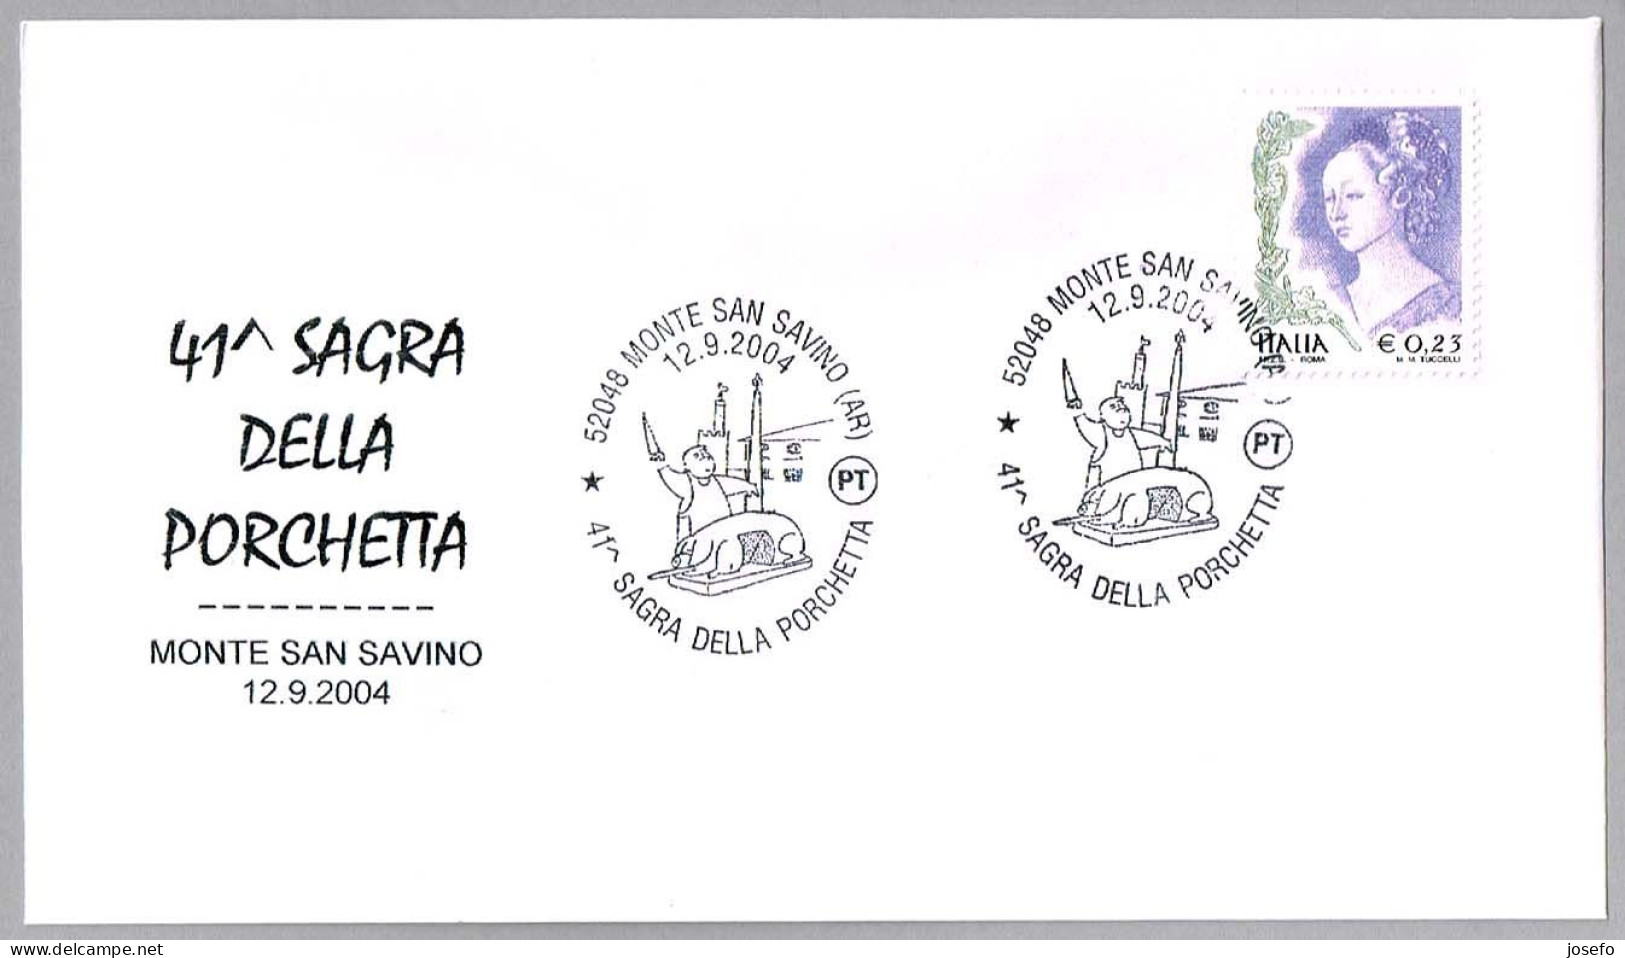 41 FIESTA DE LA PORCHETTA - Carne De Cerdo Asada En Barbacoa. Monte San Savino, Arezzo, 2004 - Alimentation